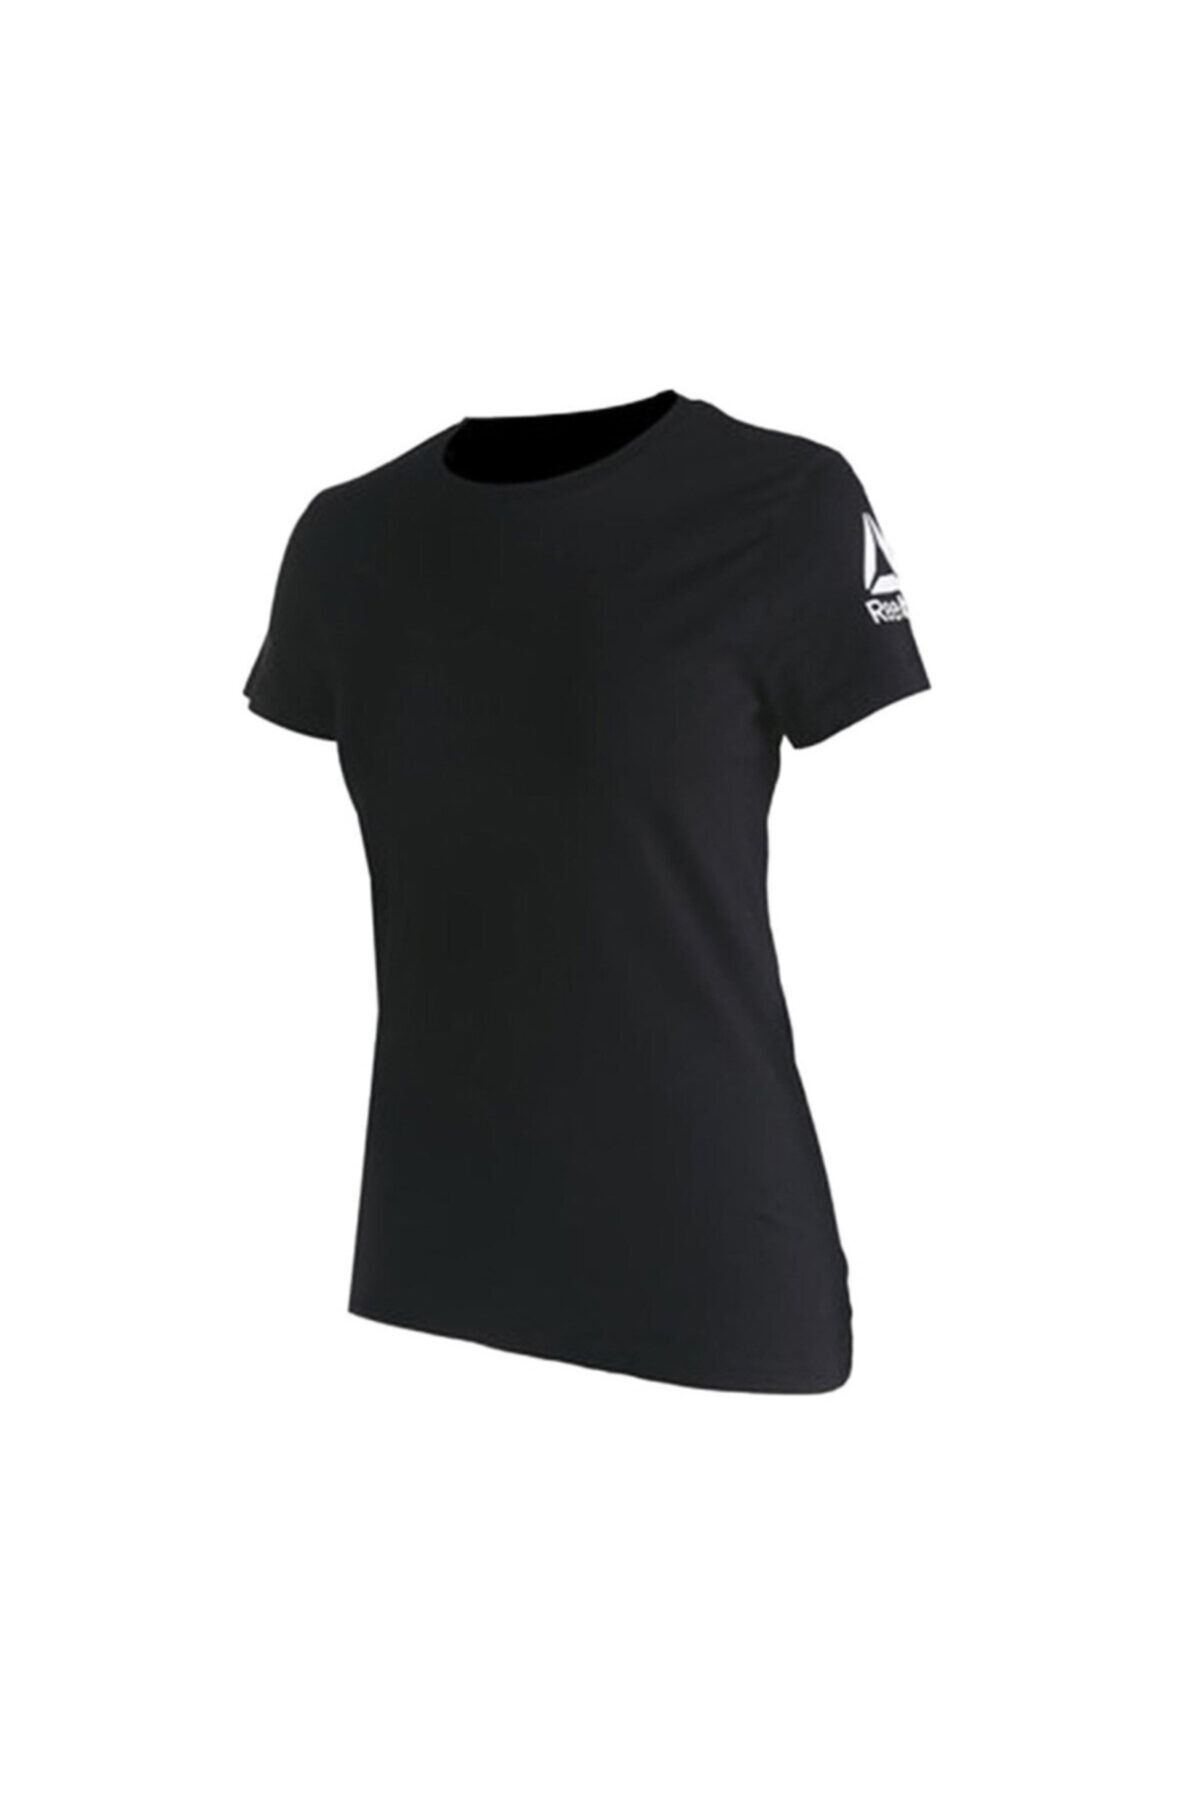 تی شرت مشکی اسپرت یقه گرد مدل ساده طرح چاپی آستین کوتاه زنانه ریباک Reebok (برند انگلستان)